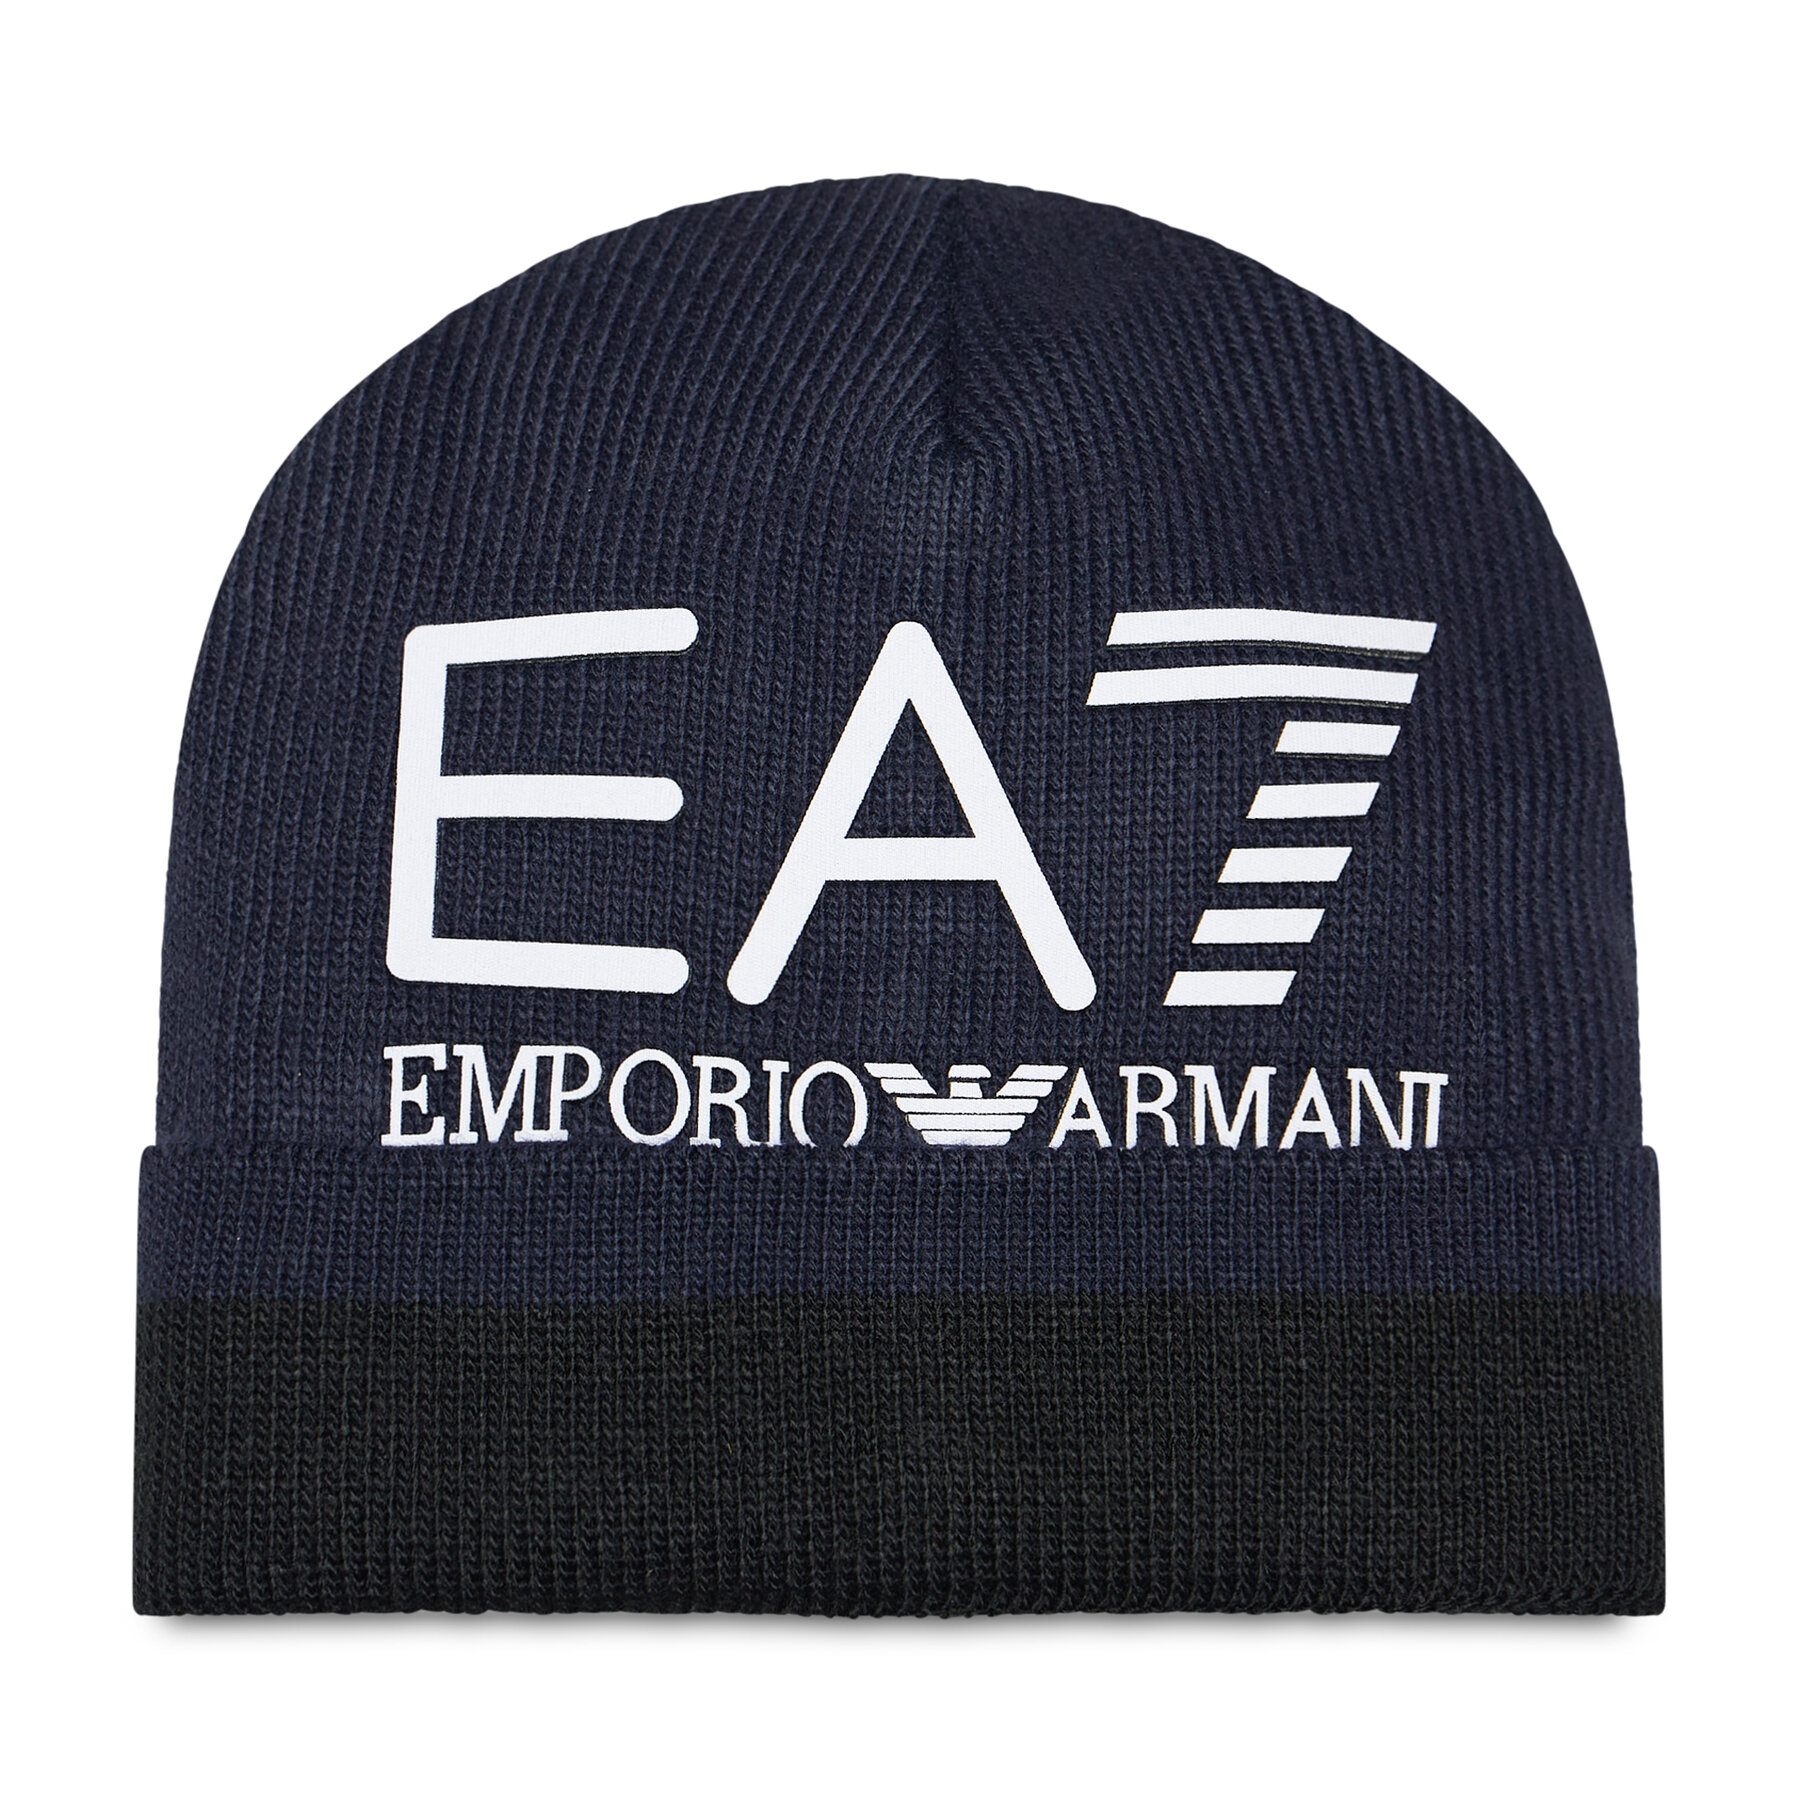 Căciulă EA7 Emporio Armani 274981 2F301 00035 Blu Navy 00035 imagine noua